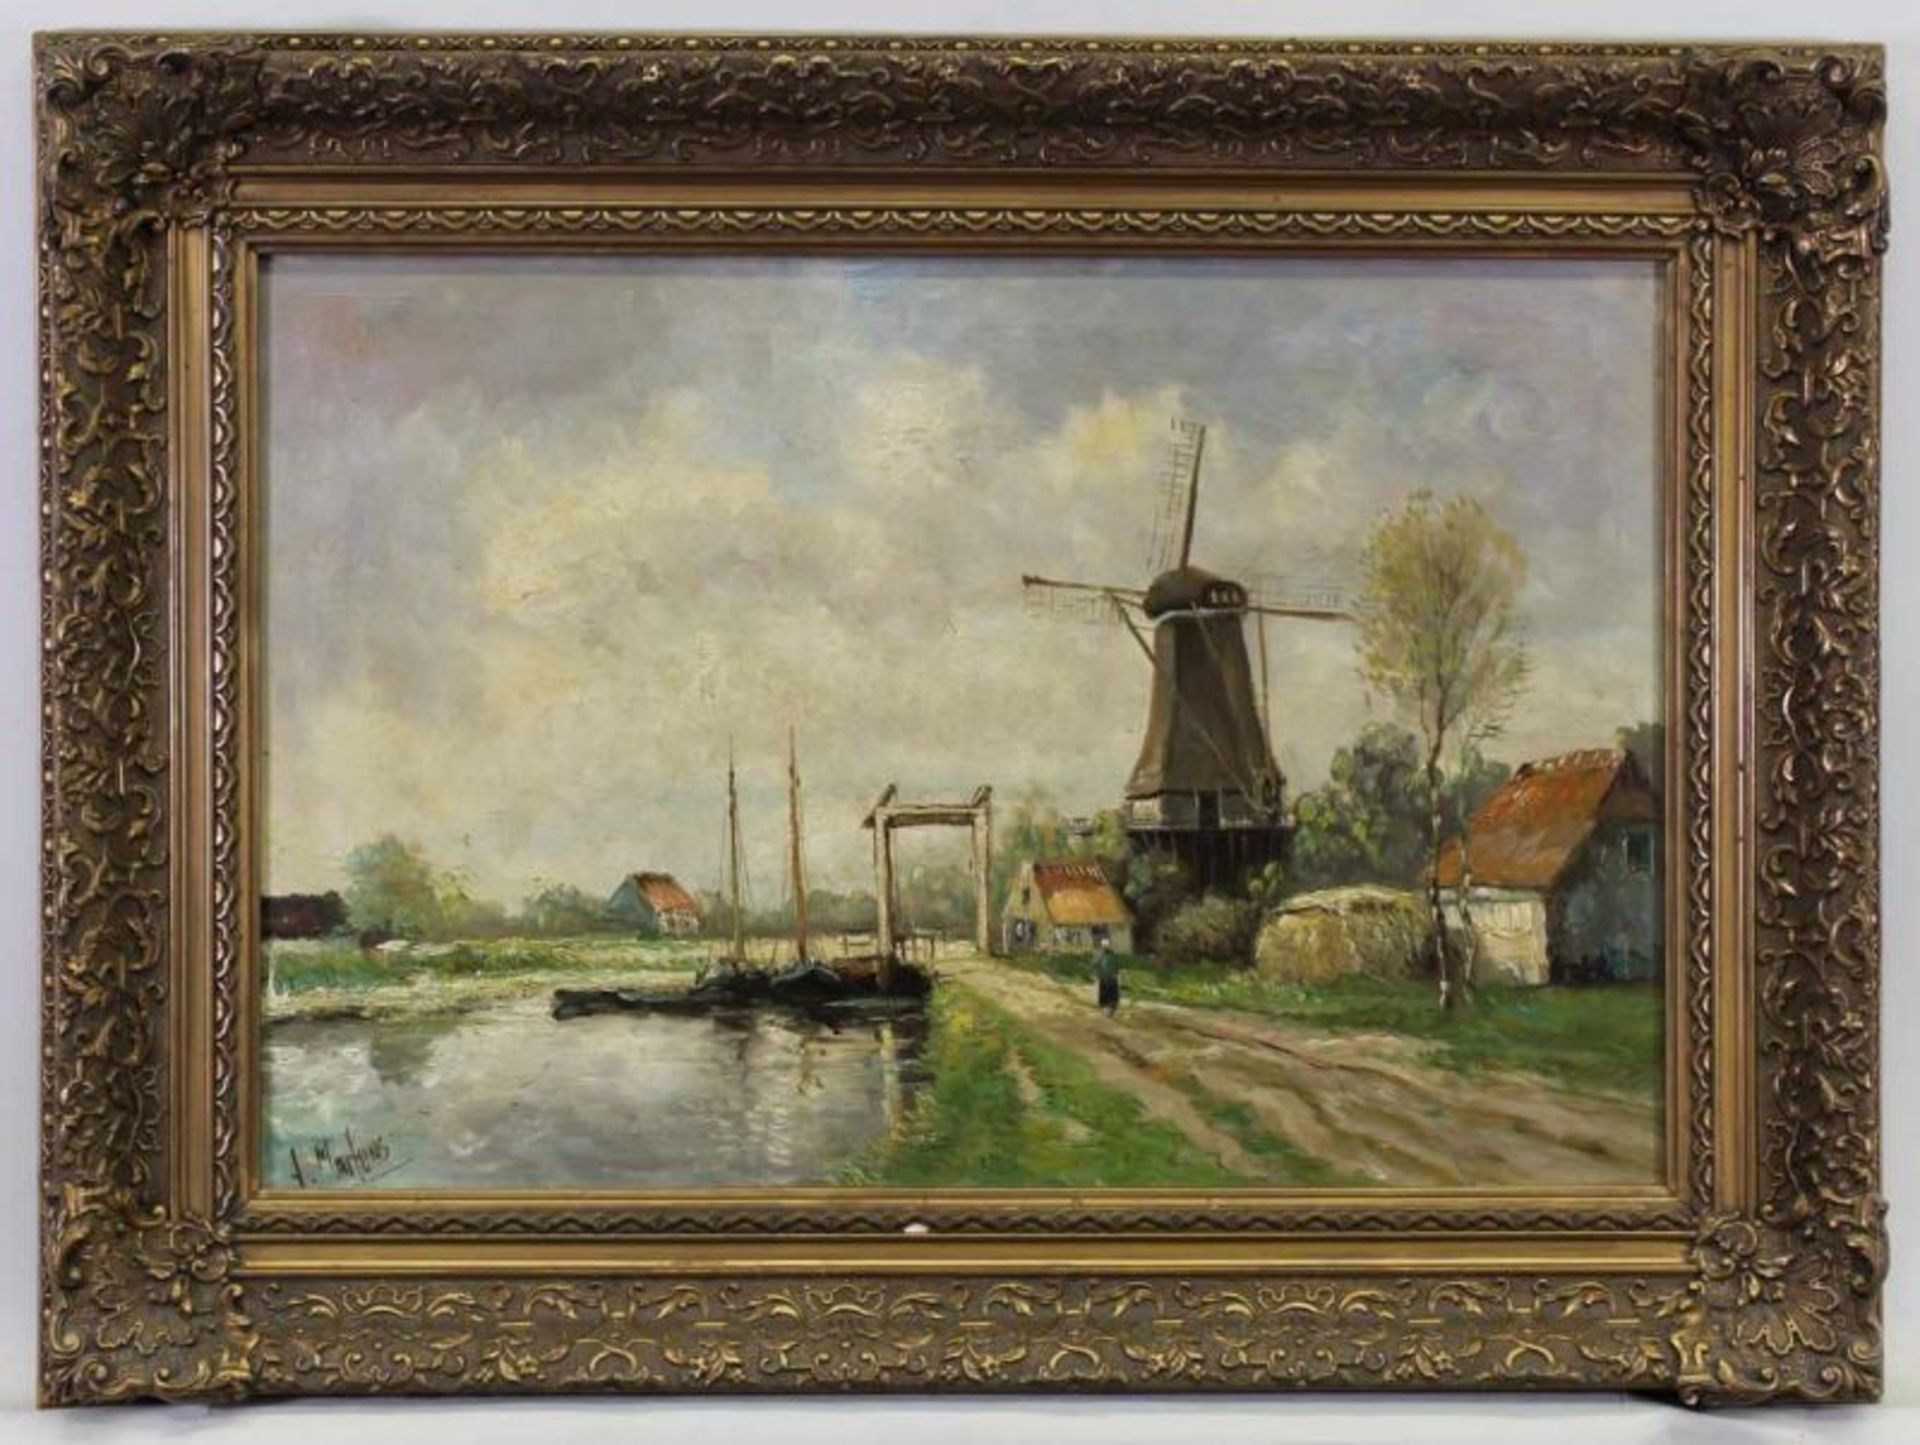 Martens, Alfred (1888 - 1936, Landschaftsmaler), "Windmühle an Flusslandschaft", Öl auf Leinwand, - Bild 2 aus 4